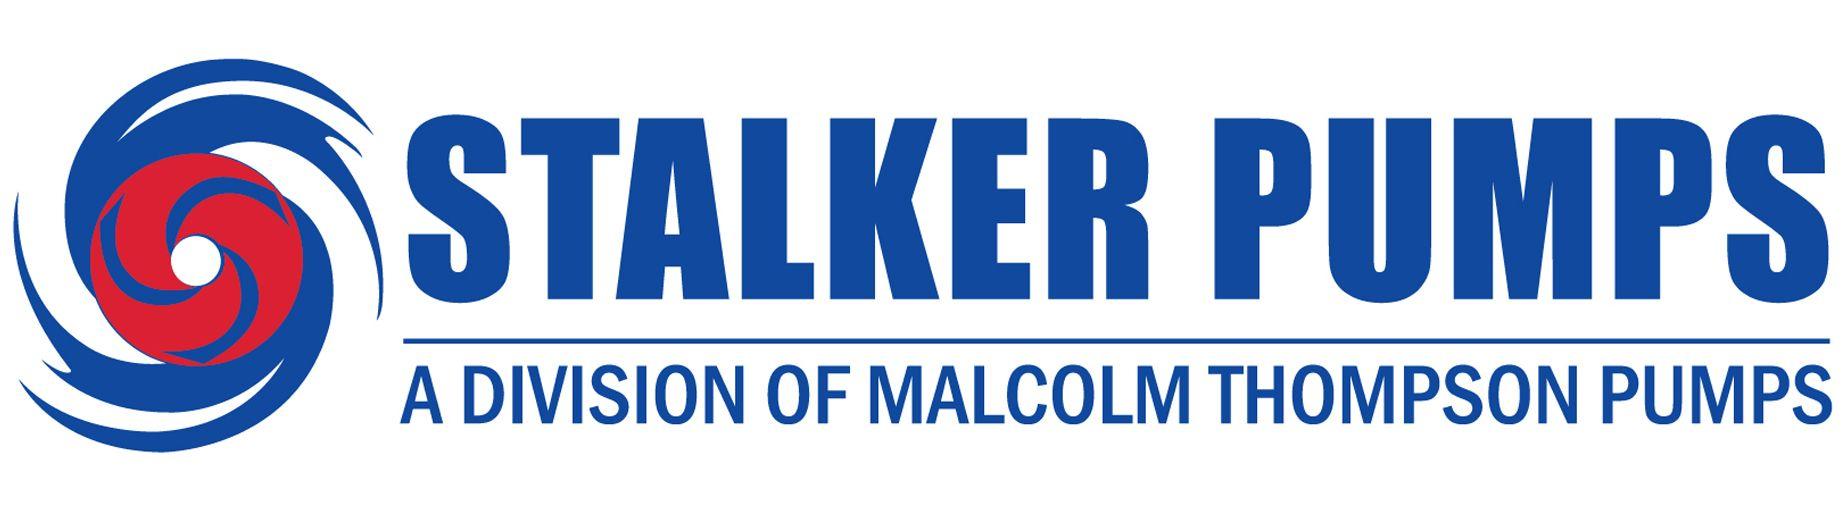 Pump Logo - Stalker Pumps - Malcolm Thompson Pumps